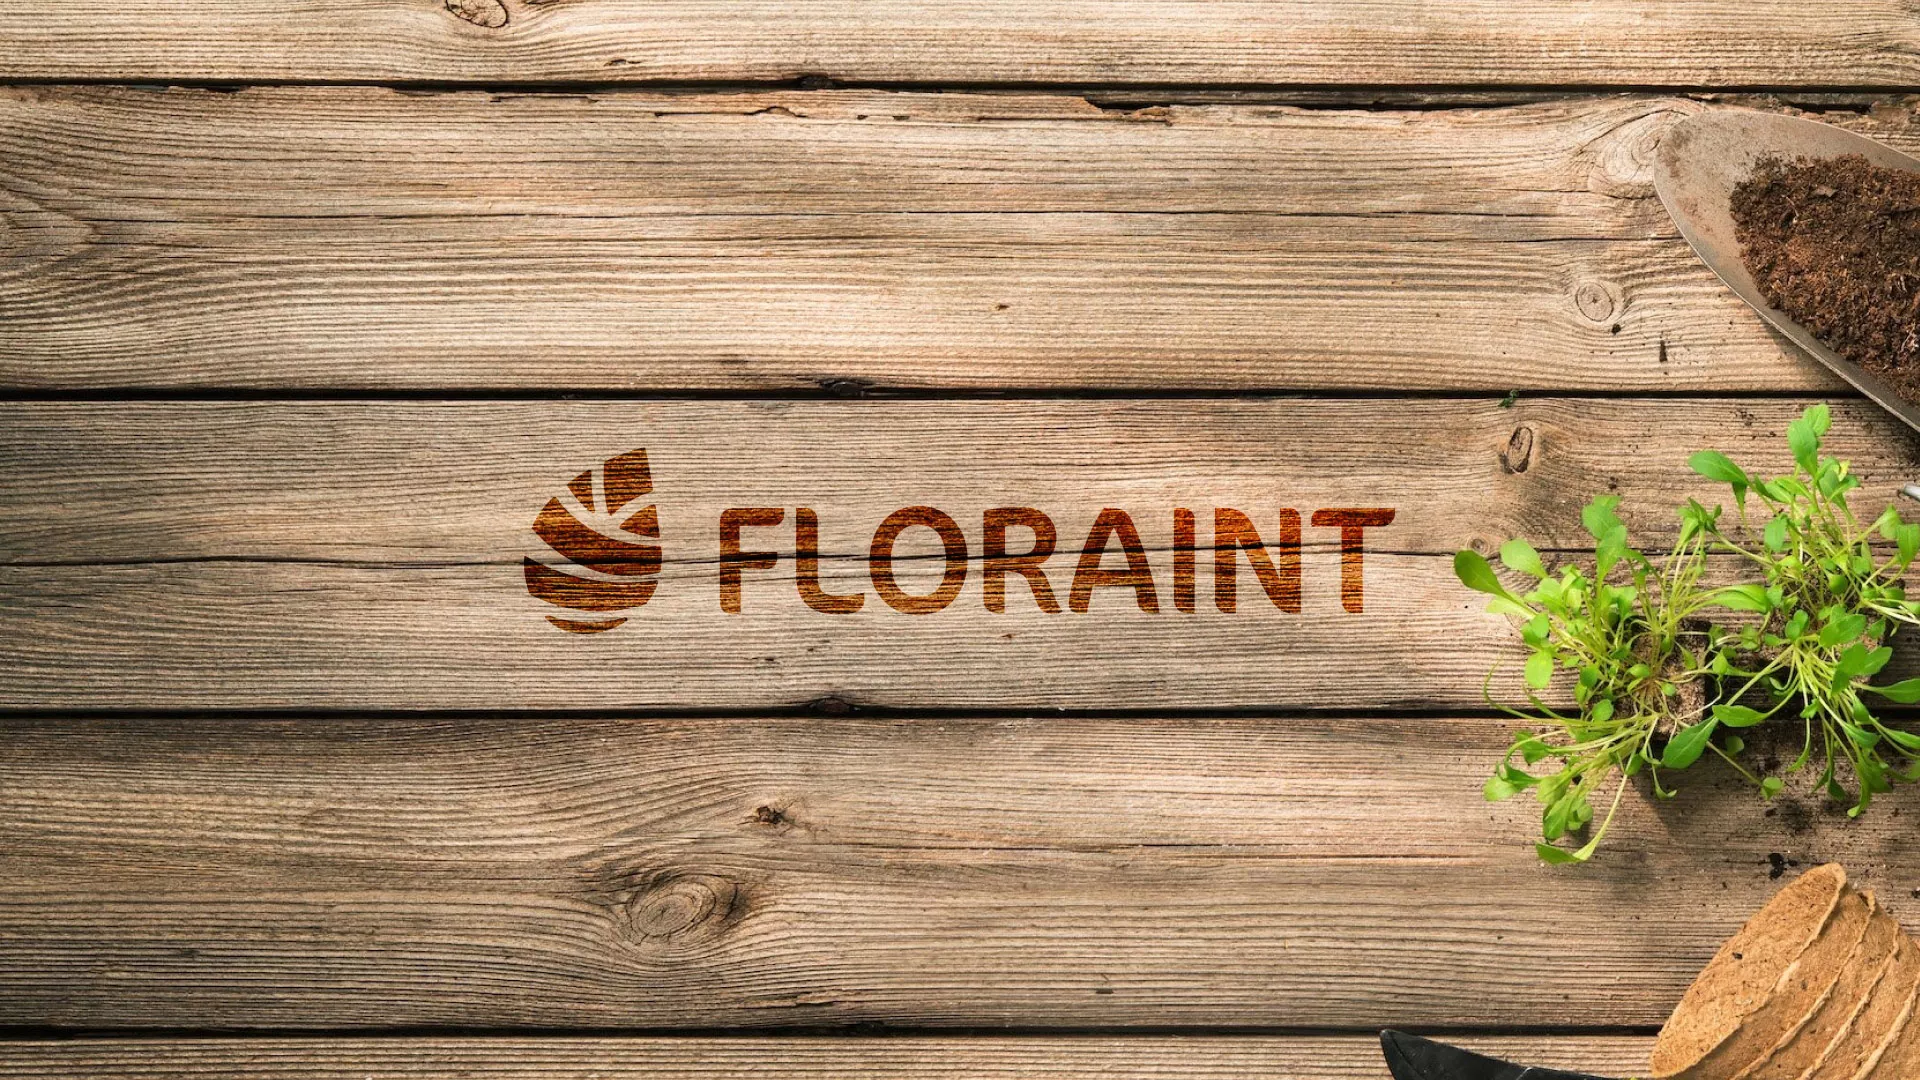 Создание логотипа и интернет-магазина «FLORAINT» в Таштаголе